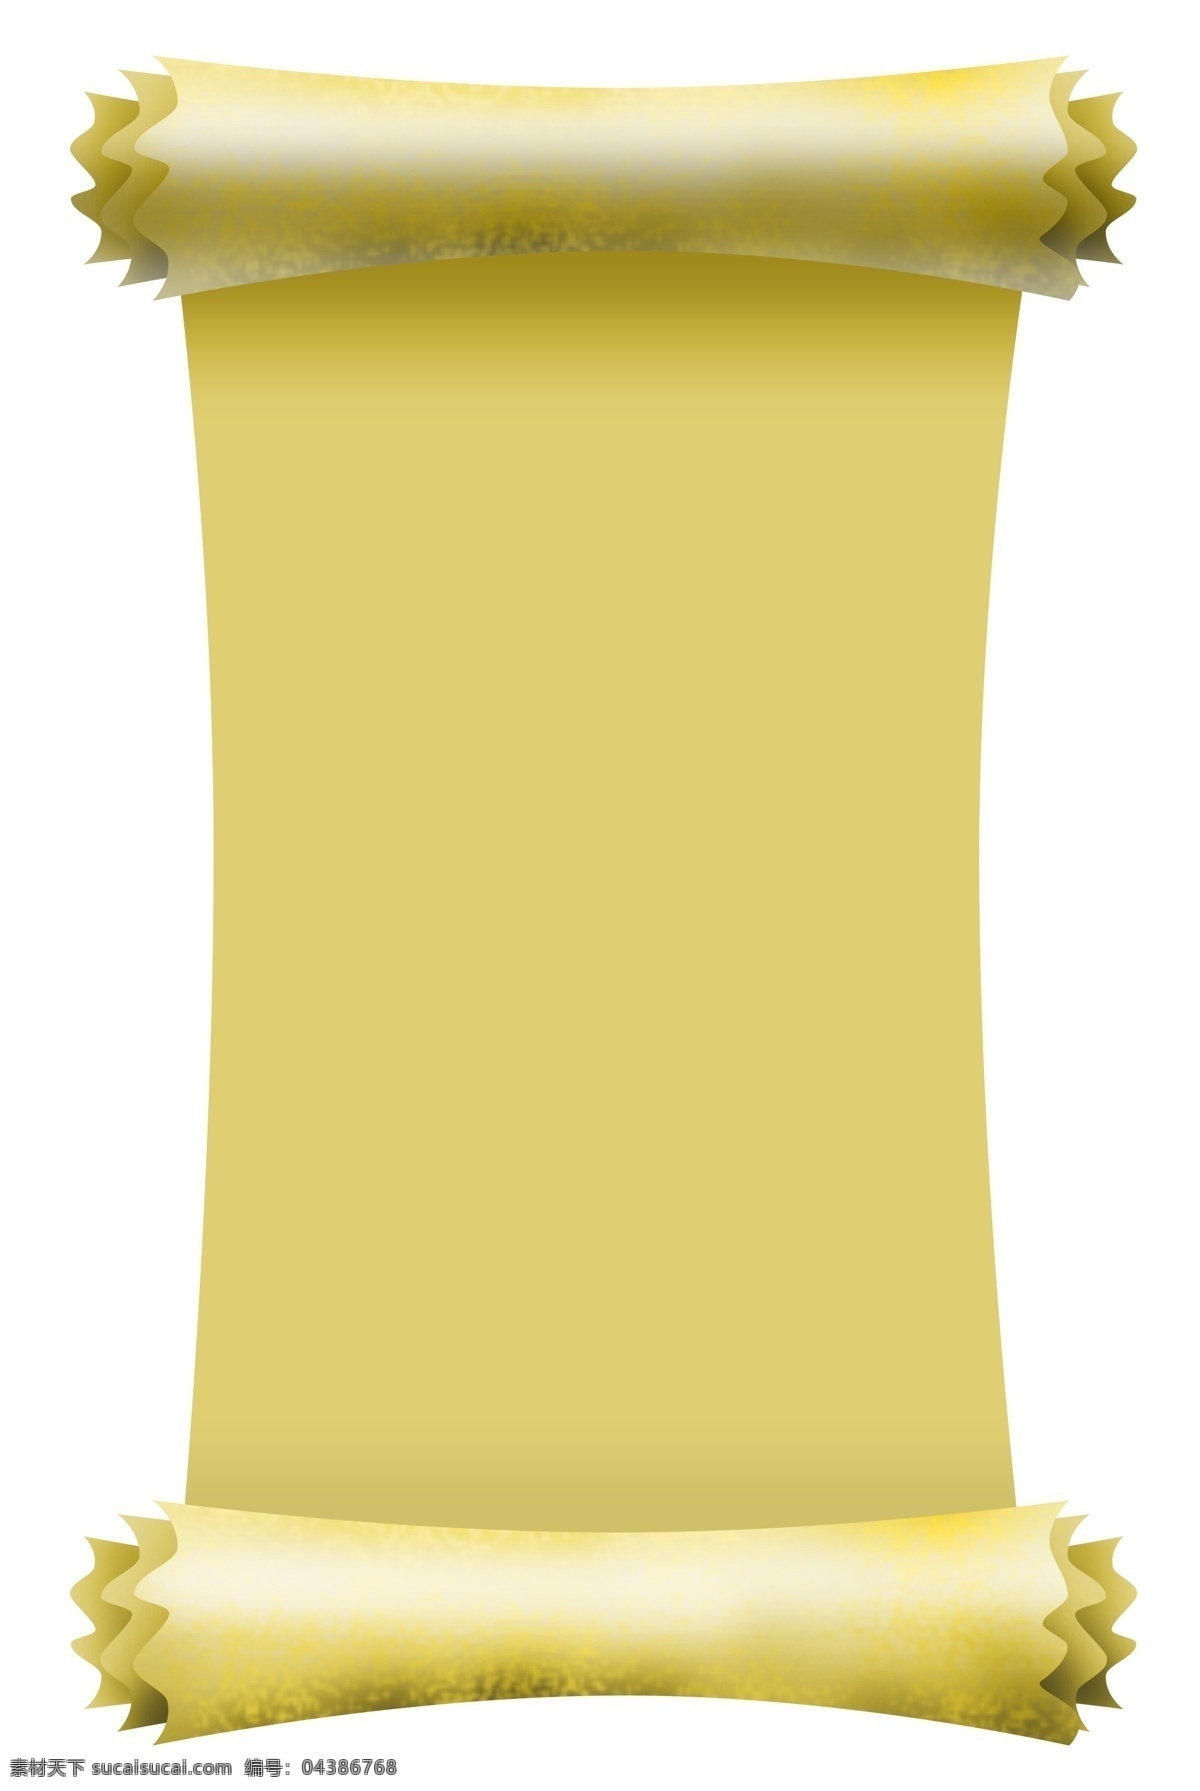 黄色 卷轴 边框 手绘 插画 黄色的卷轴 漂亮的卷轴 古风卷轴 卷轴装饰 卷轴插画 精美卷轴 打开的卷轴 卷轴边框